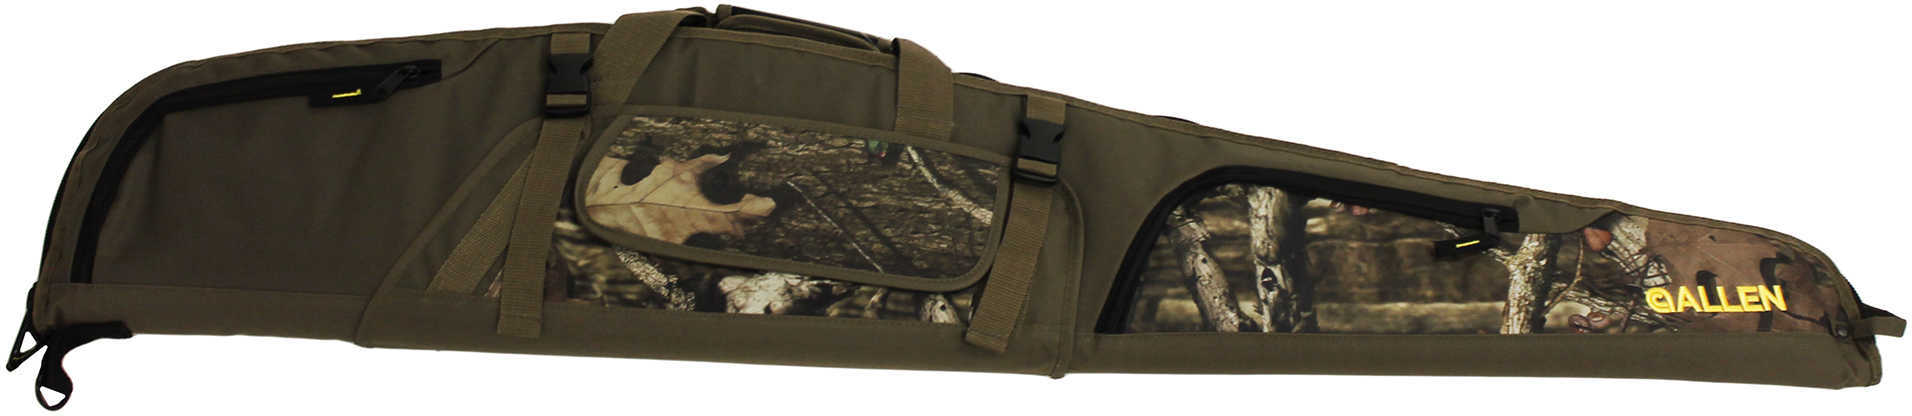 Allen Cases Bonanza Gear Fit Scoped Rifle 46" Md: 917-48